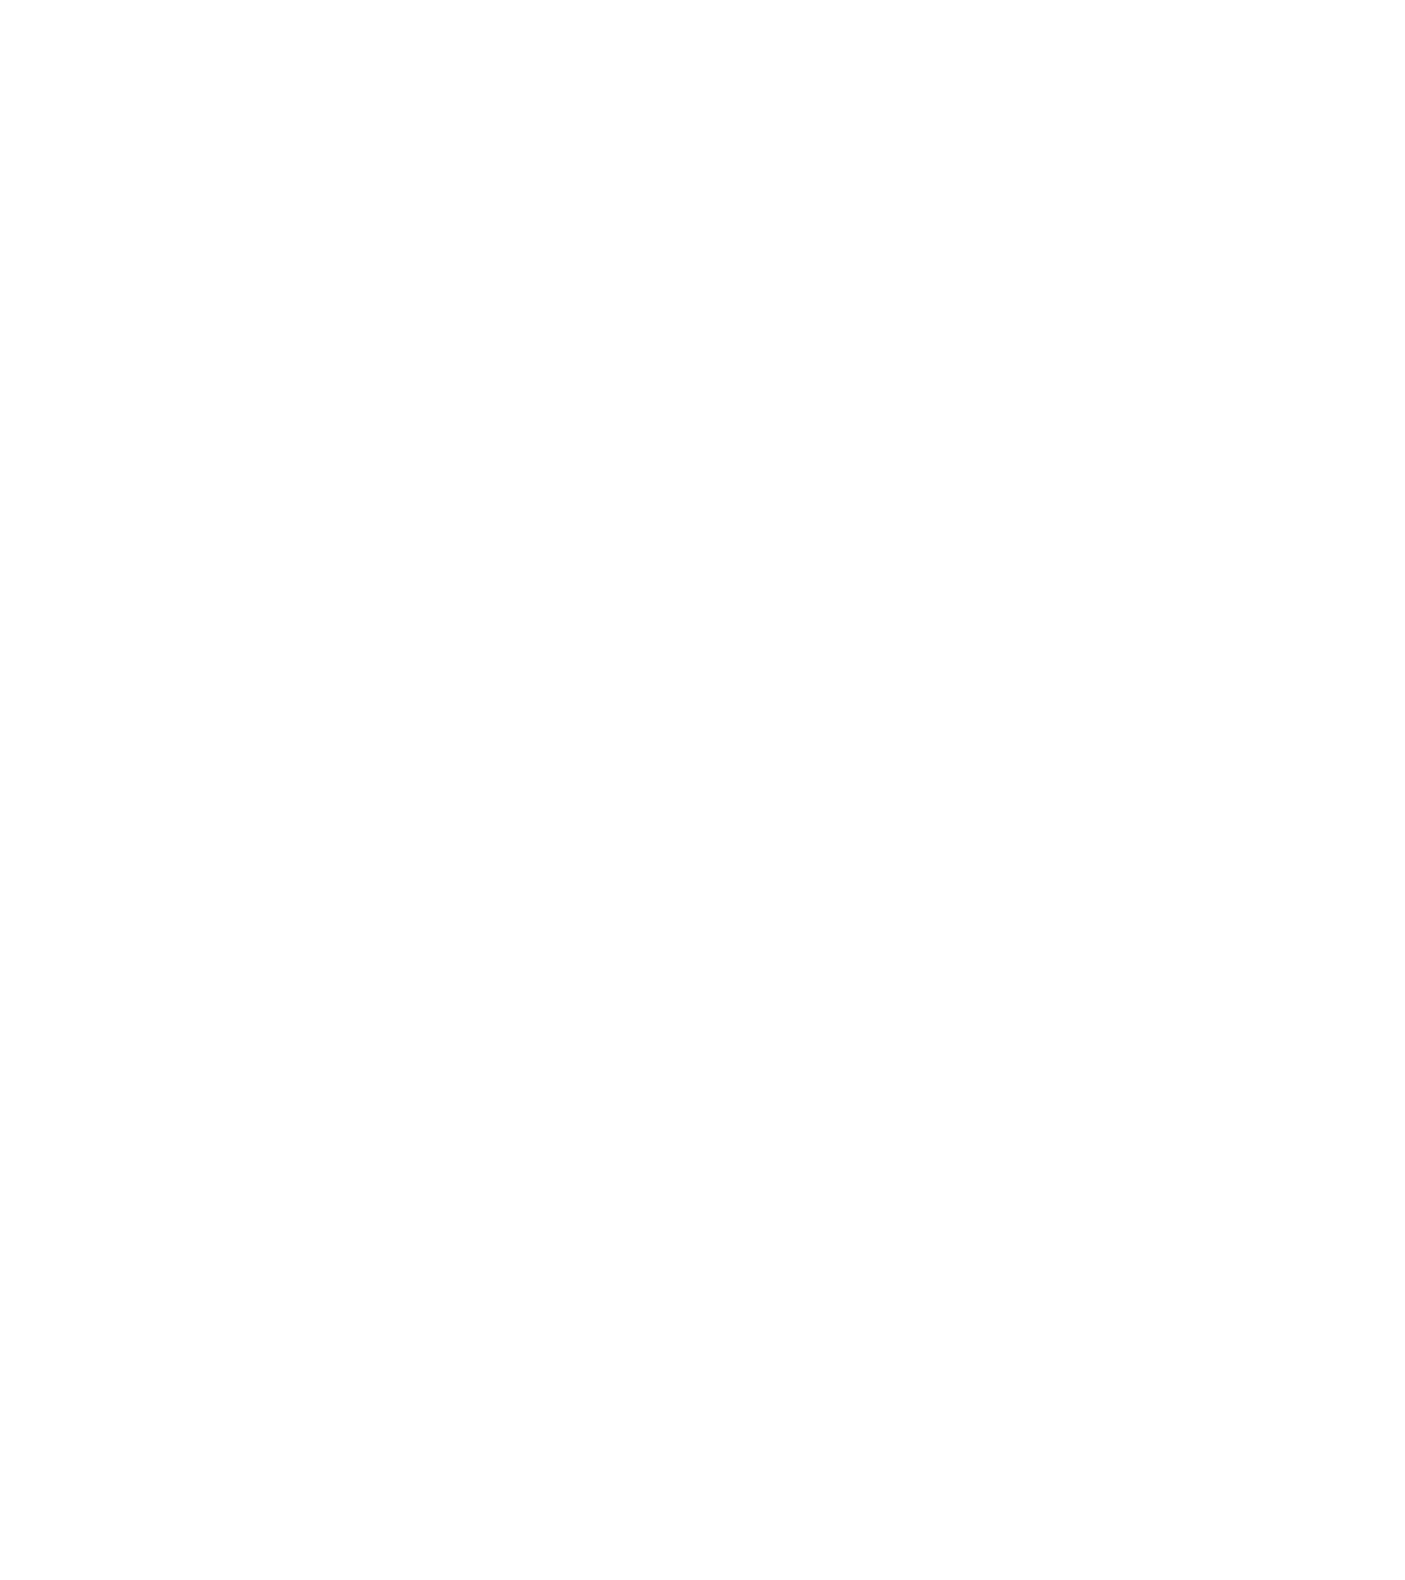 Oeneo logo pour fonds sombres (PNG transparent)